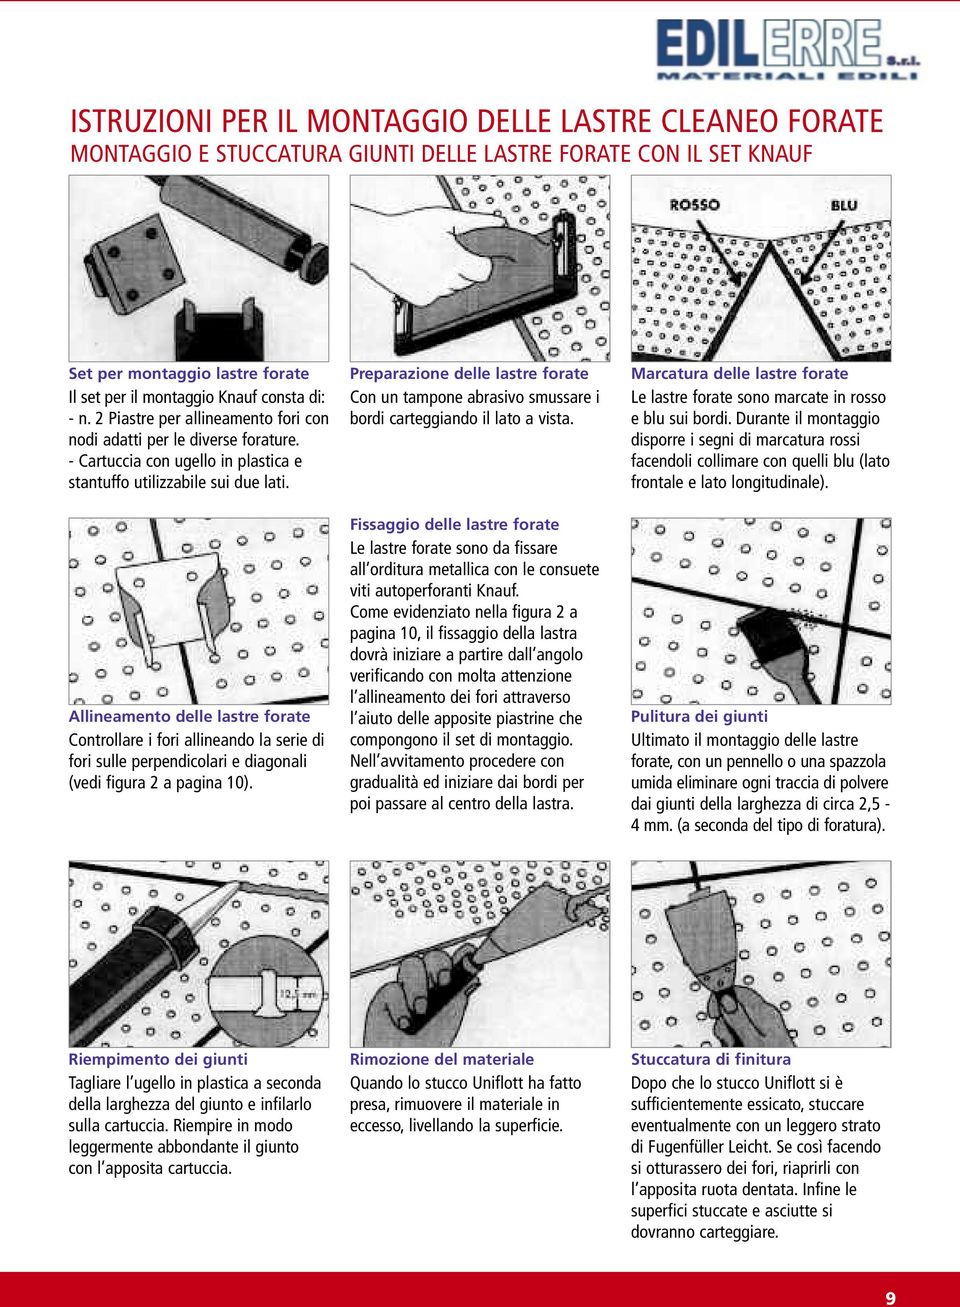 Allineamento delle lastre forate Controllare i fori allineando la serie di fori sulle perpendicolari e diagonali (vedi figura 2 a pagina 10).